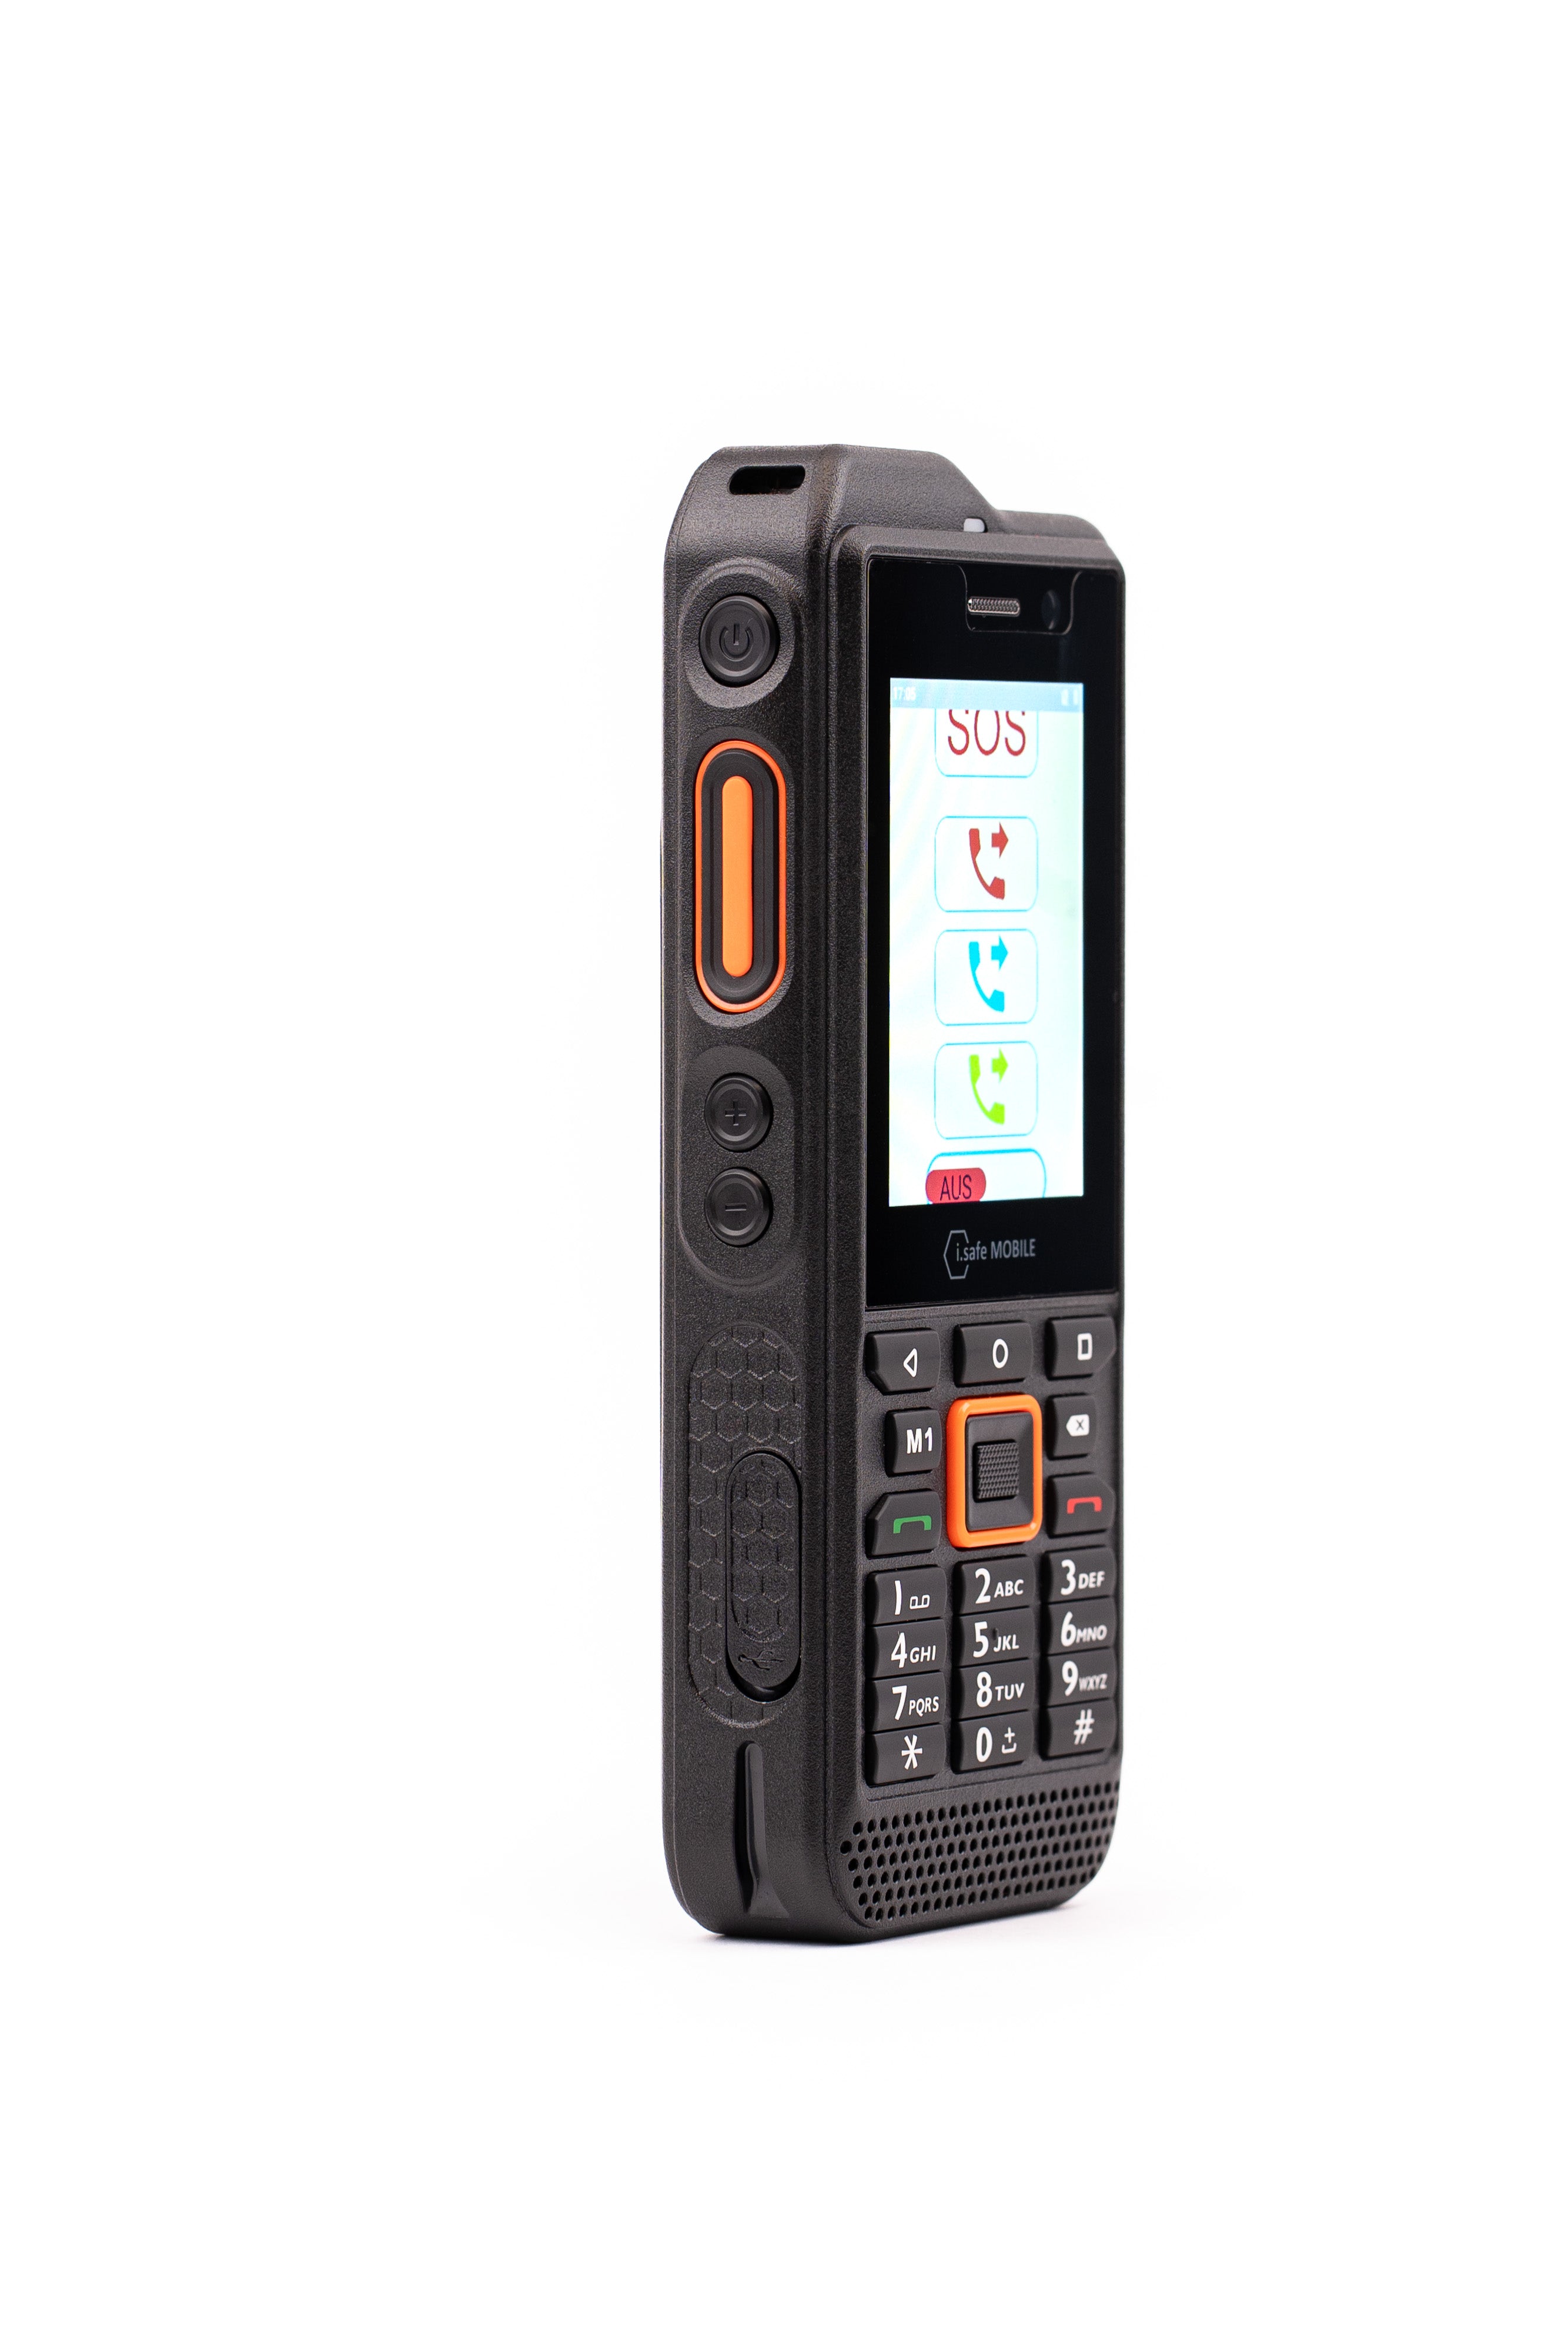 Life Tel 5 L EX ATEX smartphone för ensamarbetare i EX Zon 1/21 med nödsamtalsapp